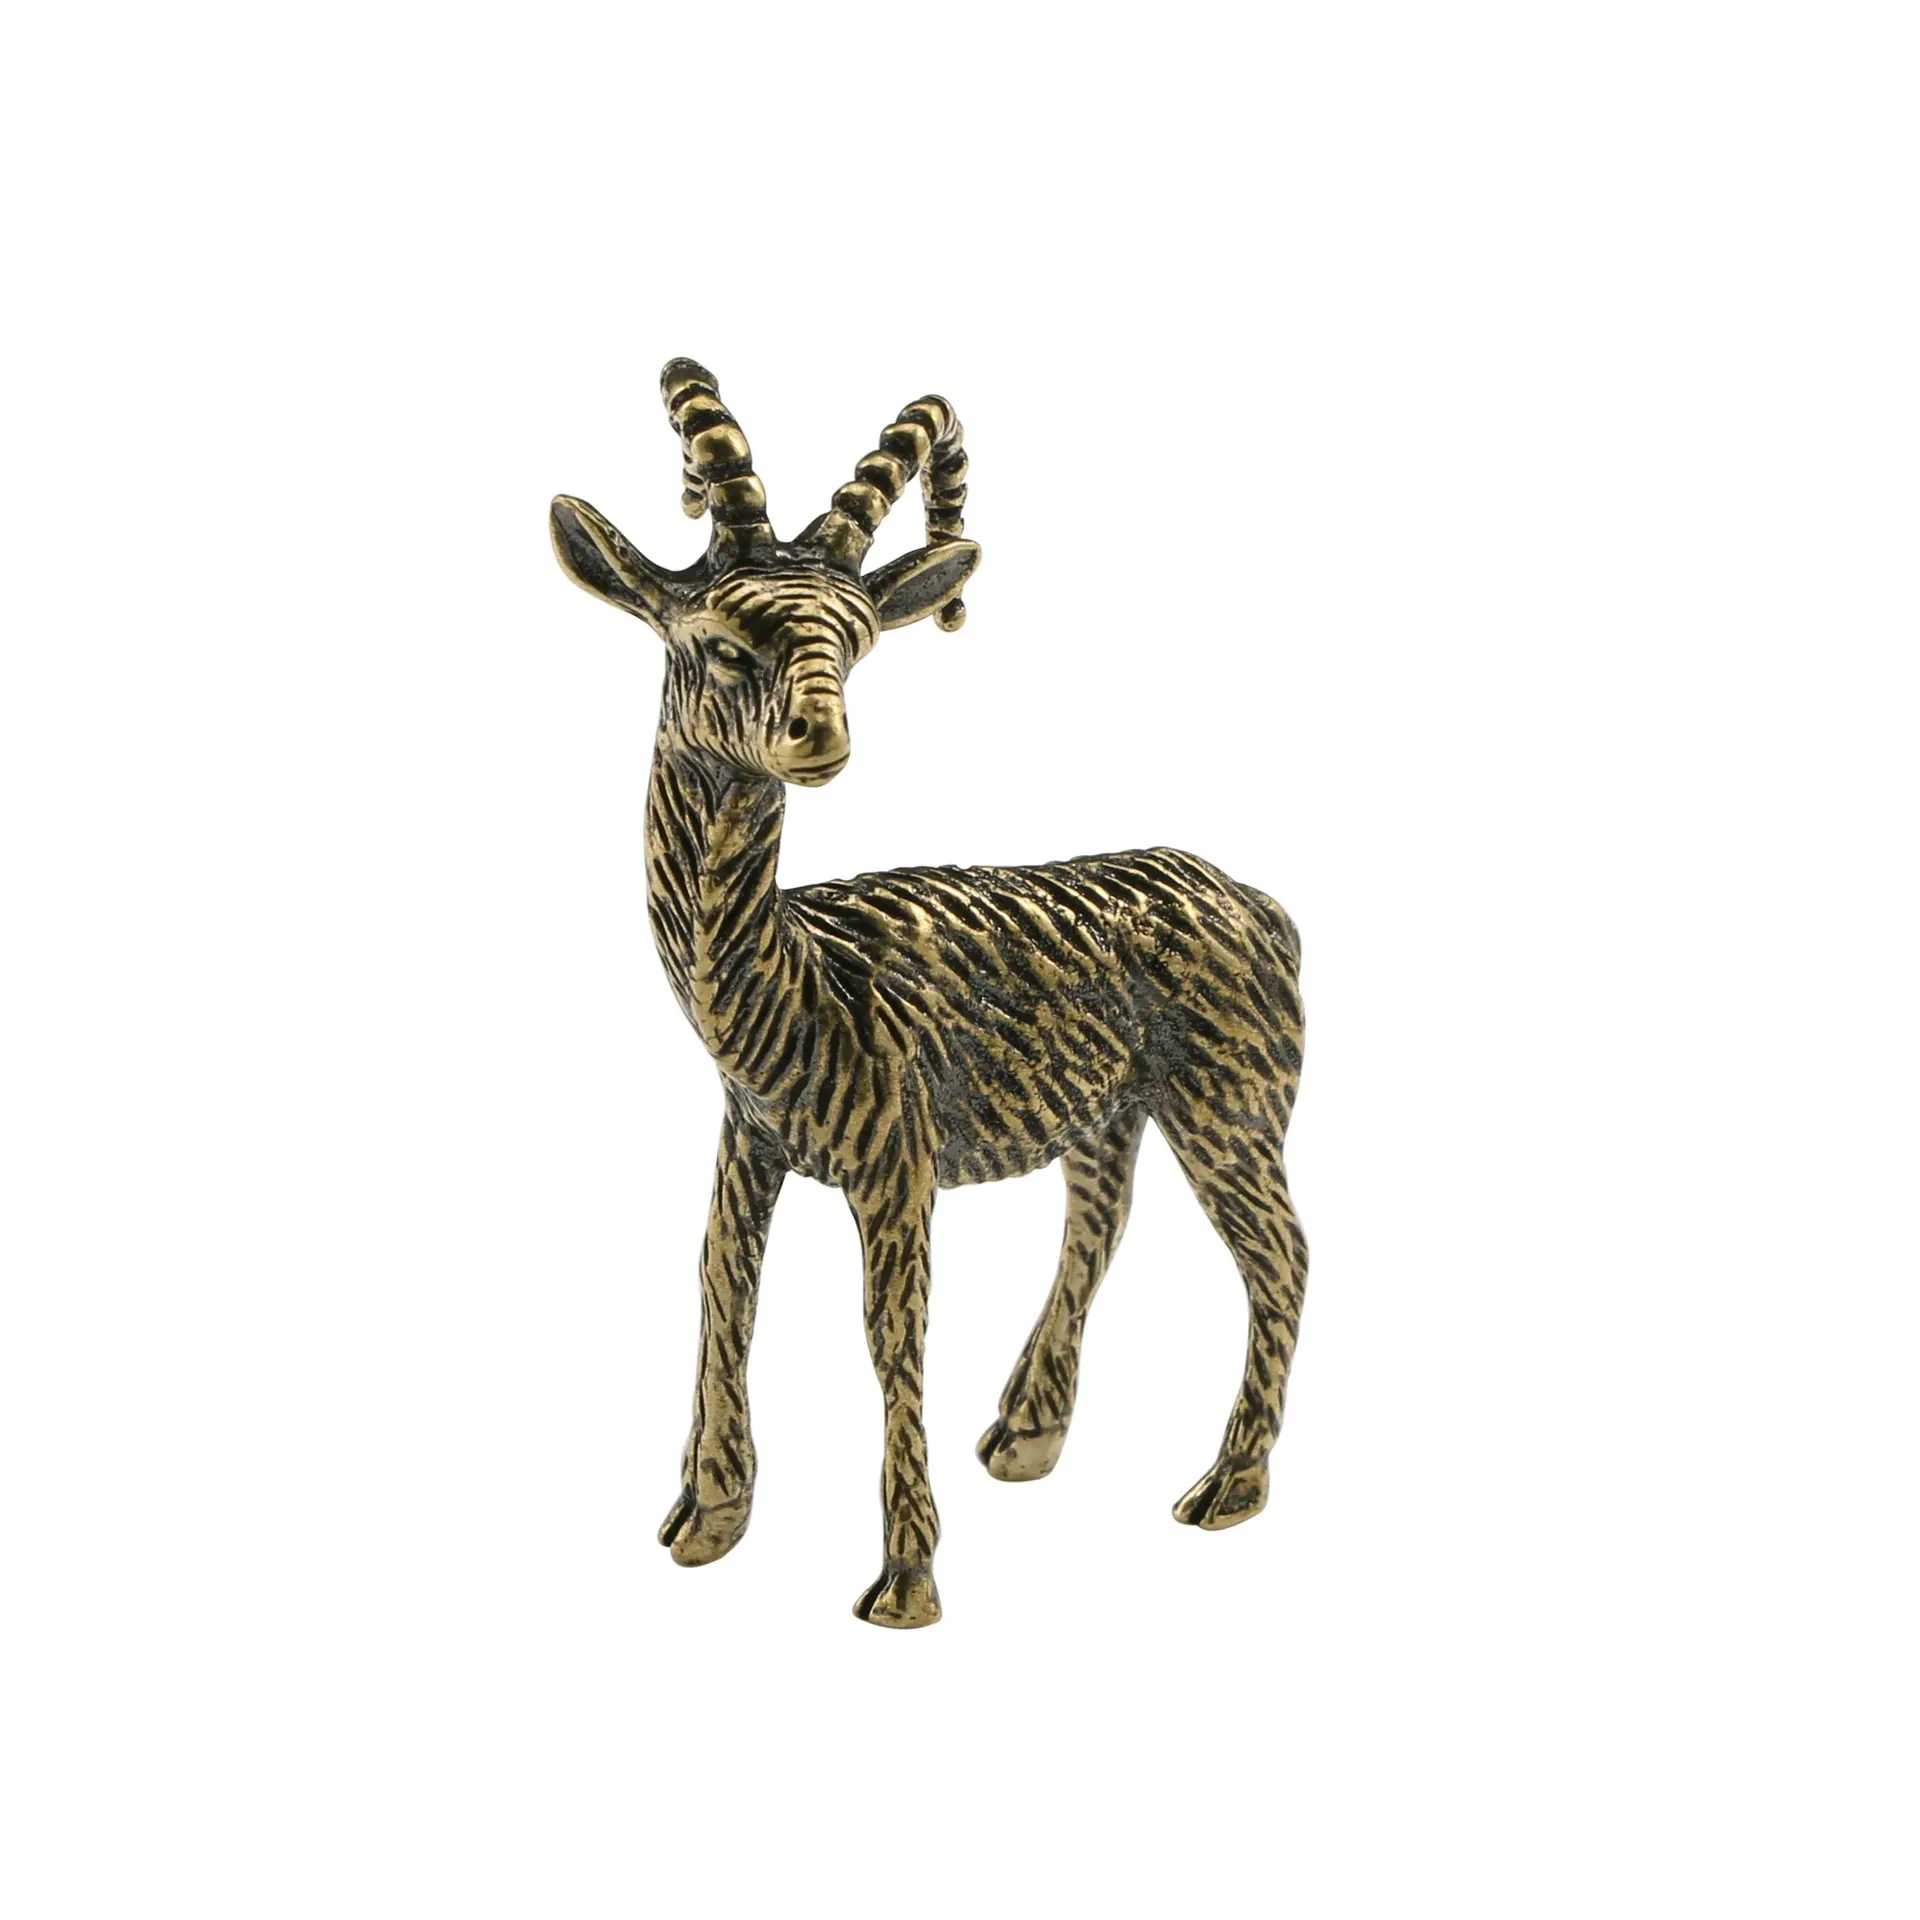 Artigianato in metallo imitazione cervo giocattoli decorazioni statua di cervo in ottone.